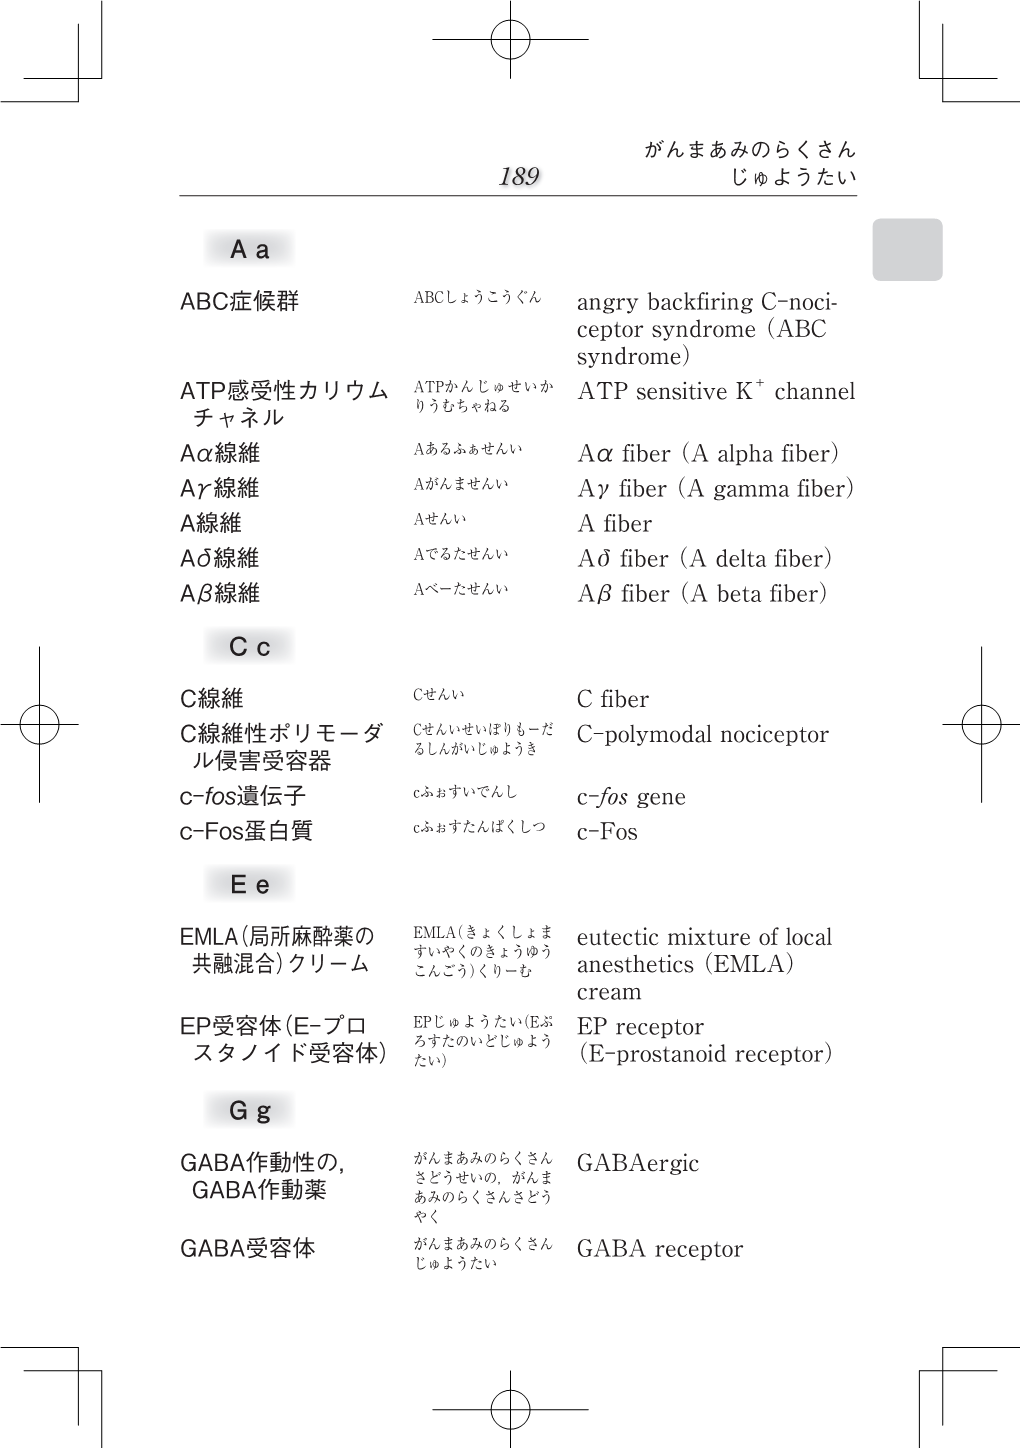 P189-375 ペインクリニック用語集4版 日本語本文.Indd